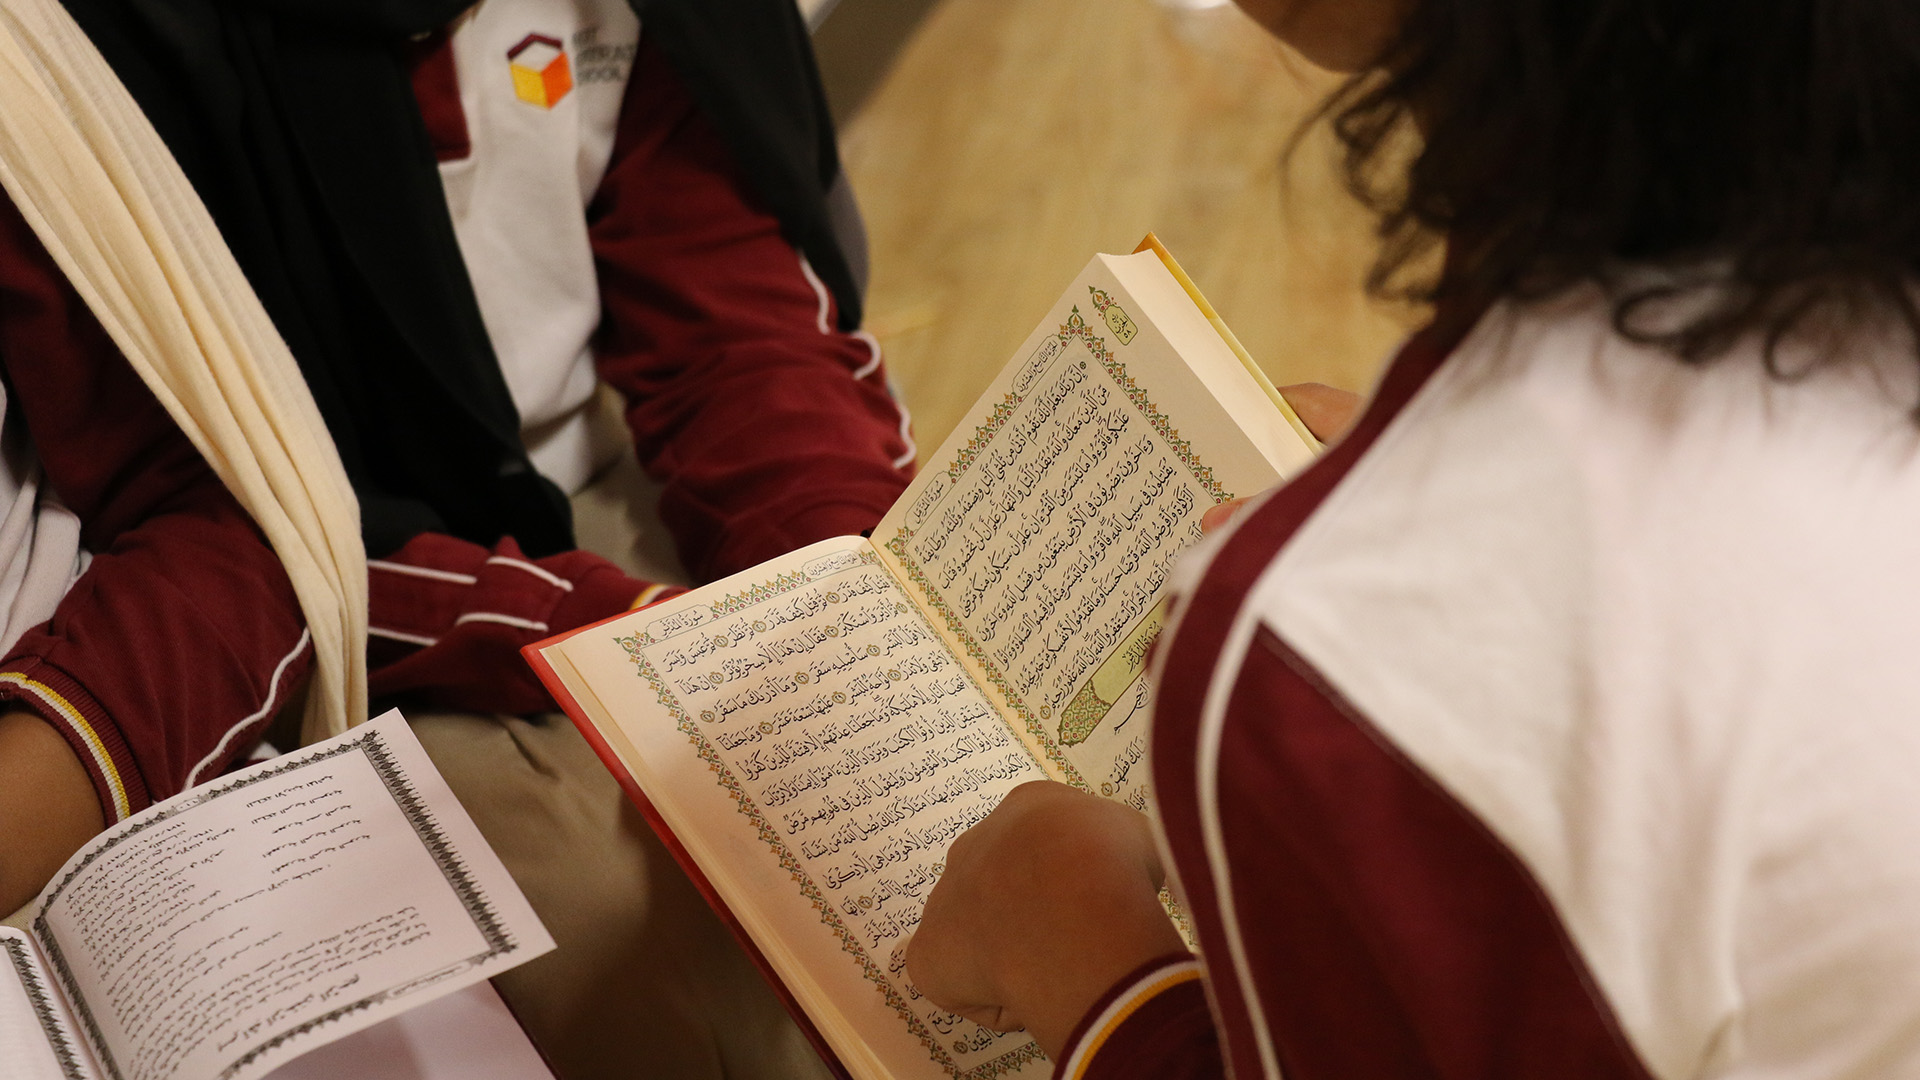 برنامج متميز للغة العربية و العلوم الإسلامية